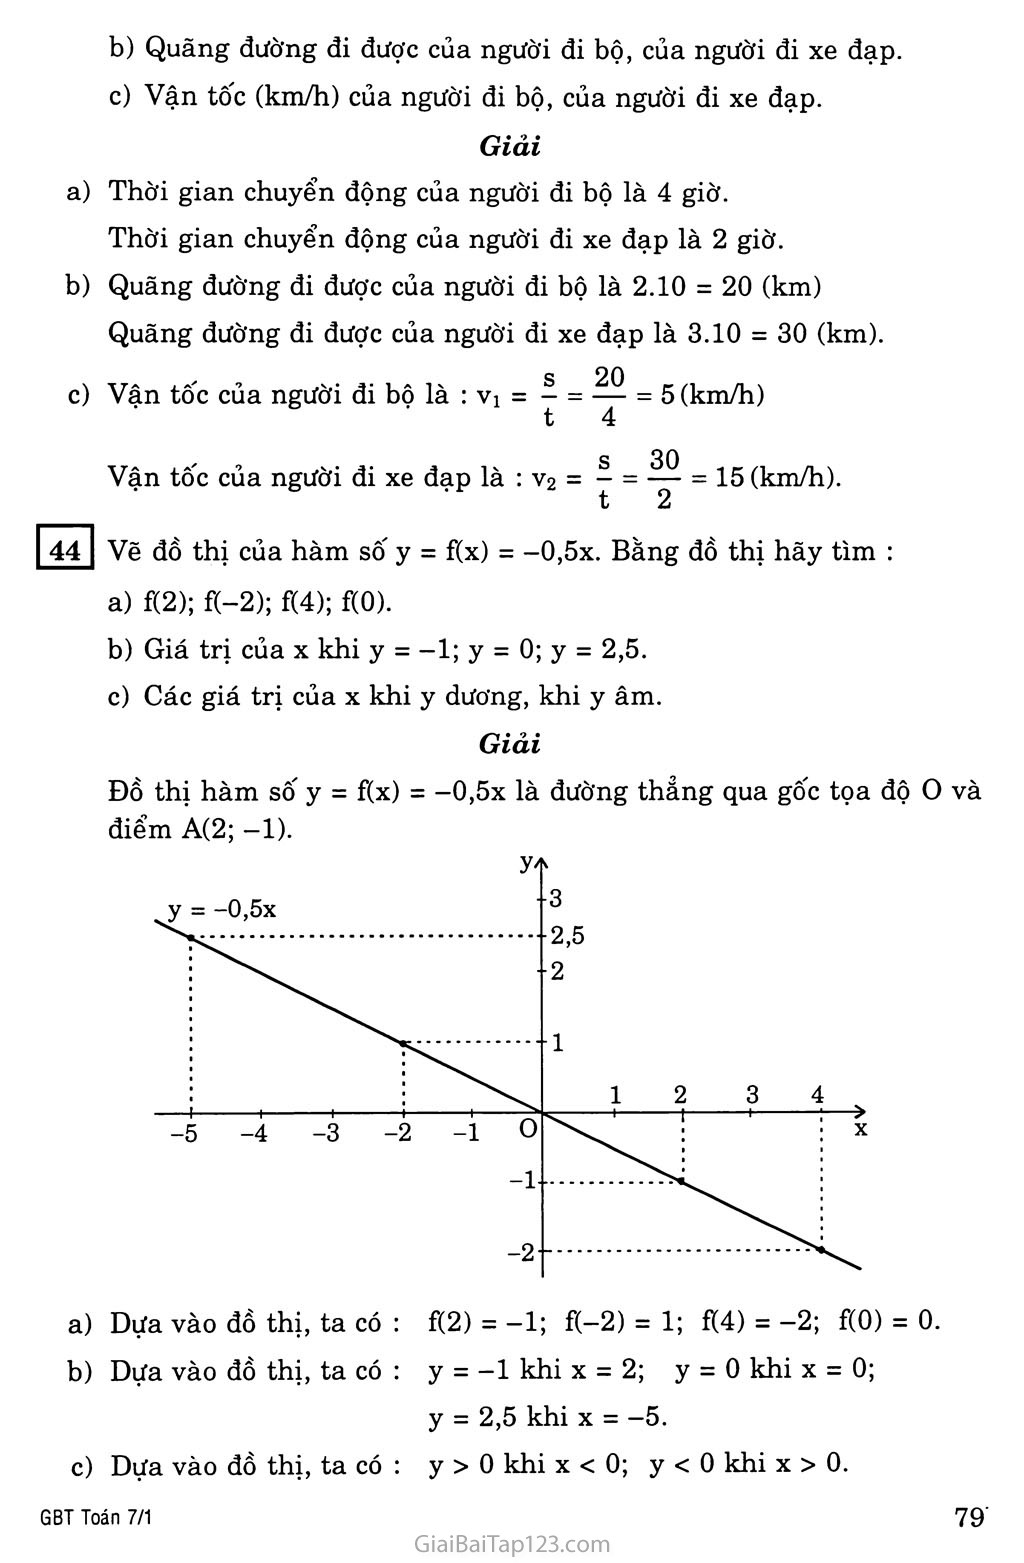 §7. Đồ thị của hàm số y = ax (a khác 0) trang 5